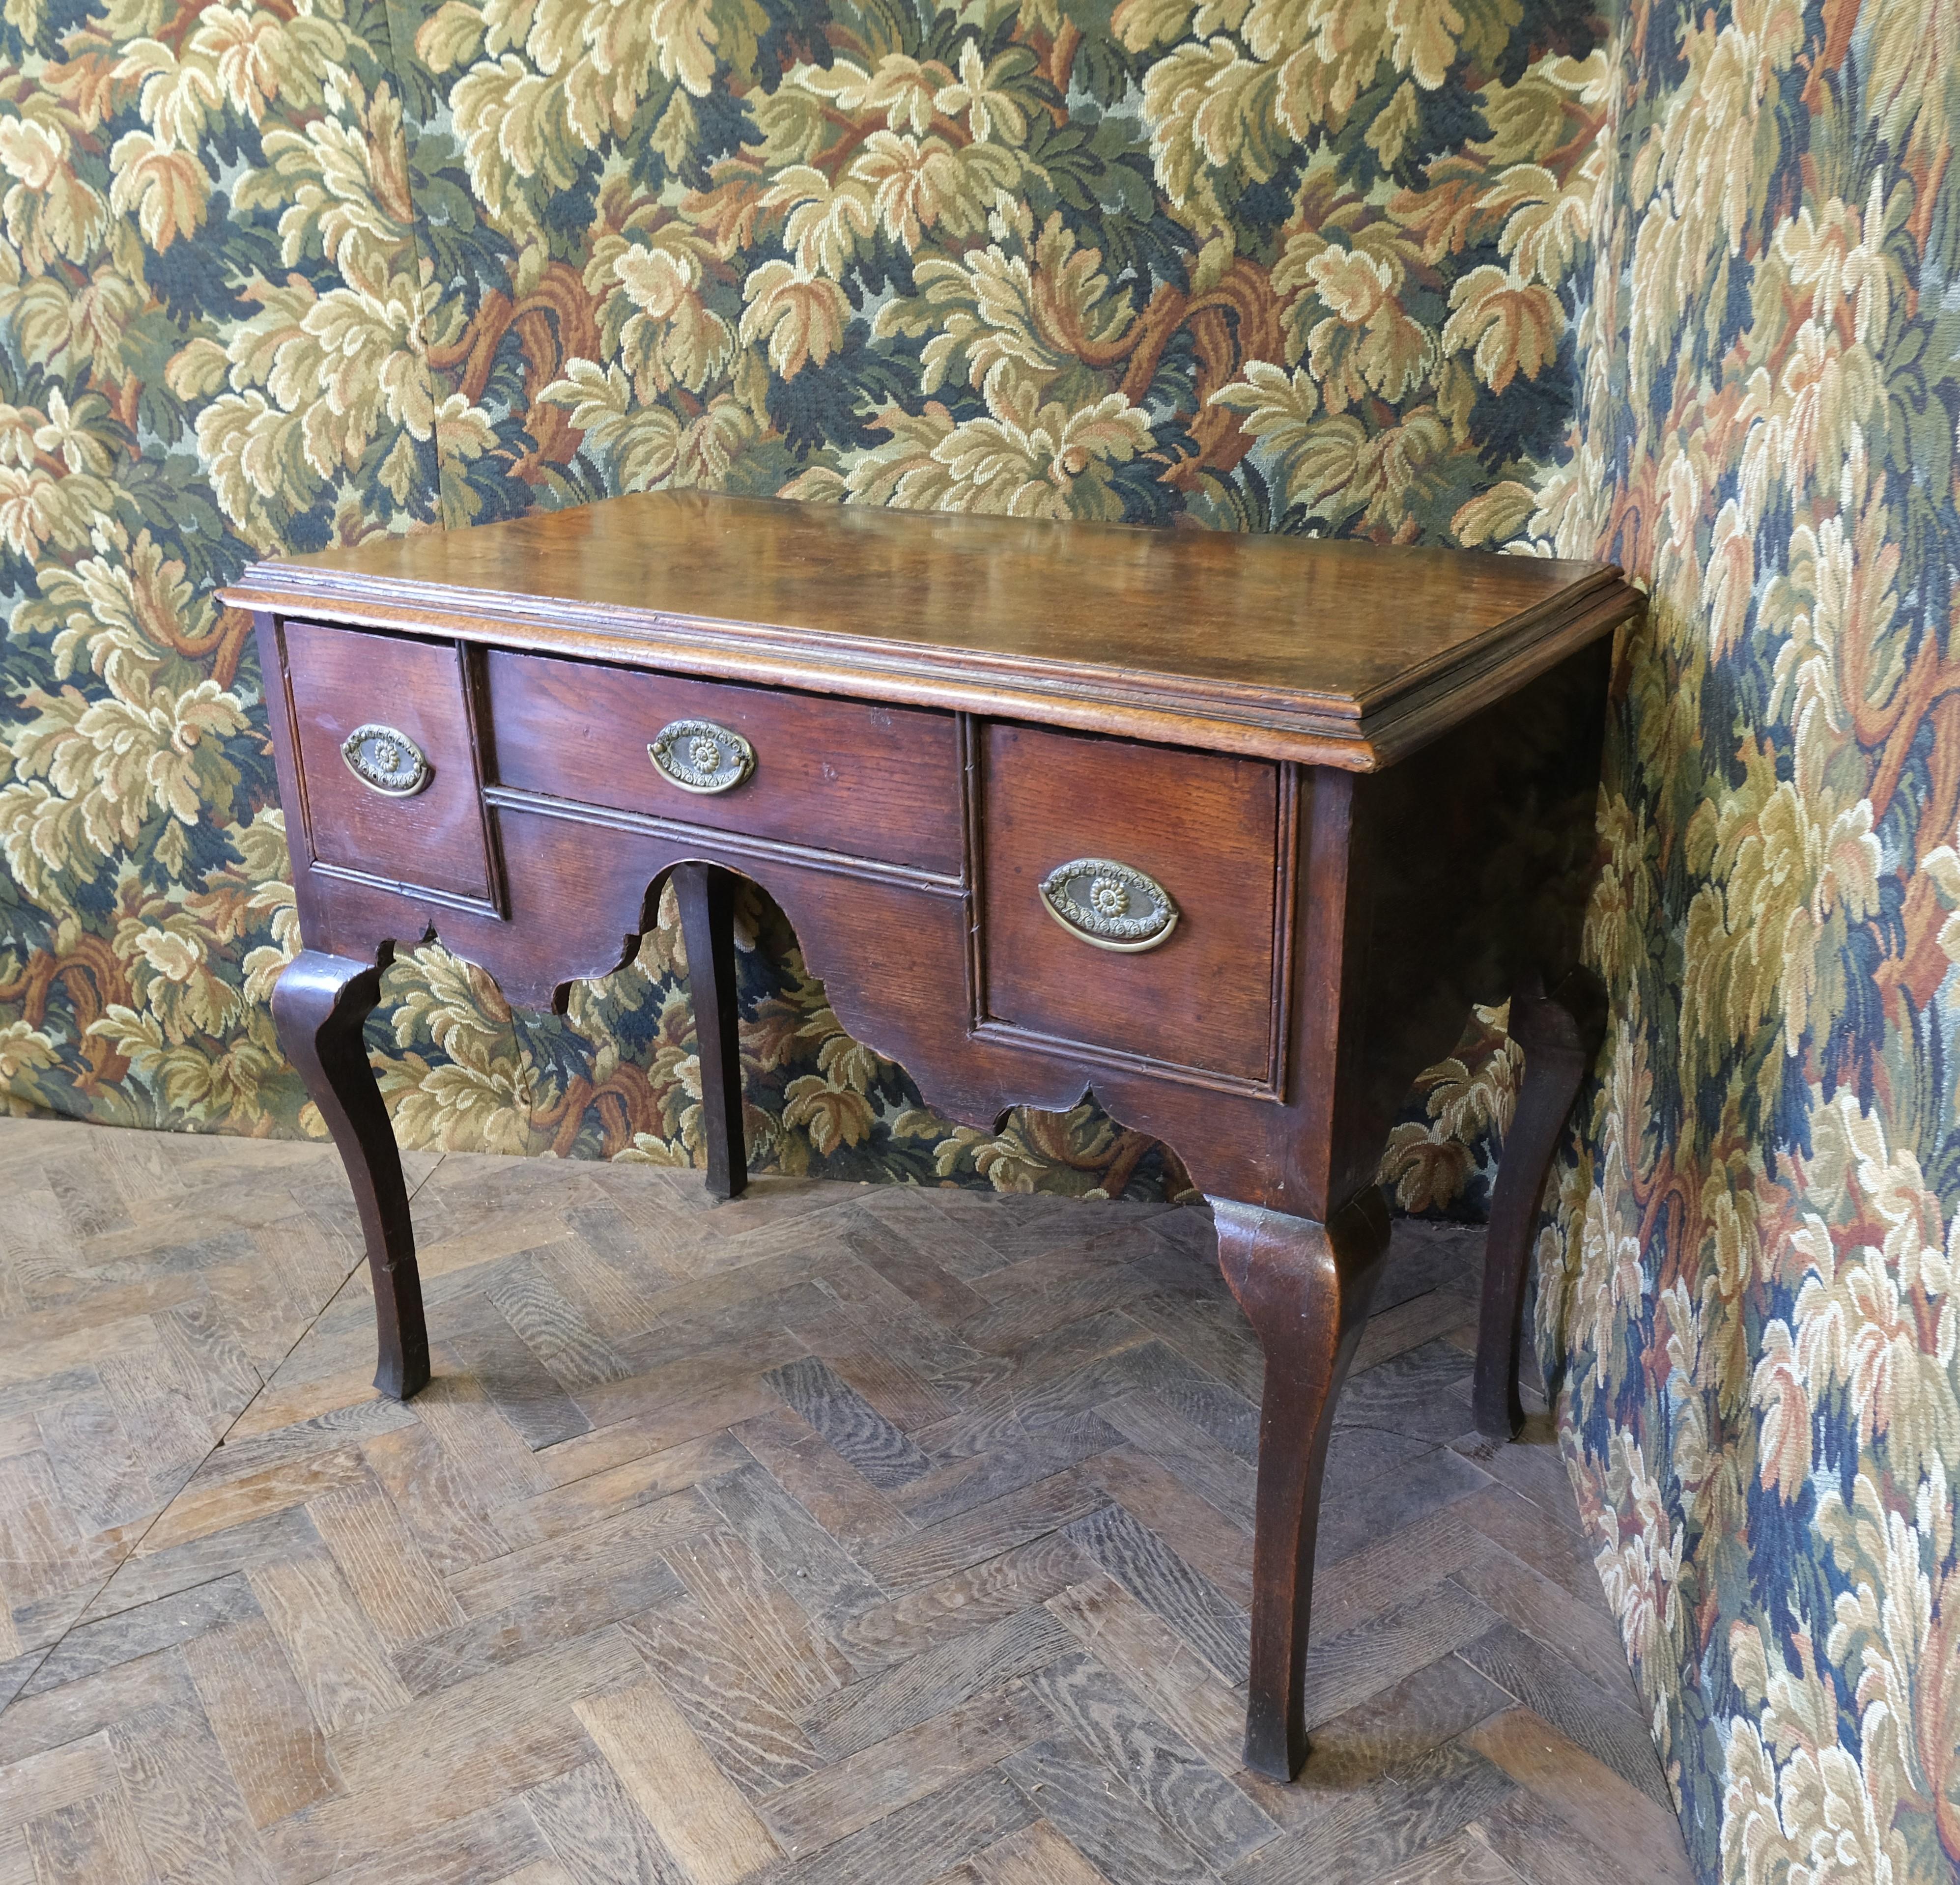 Hutton-Clarke Antiques est fier de présenter une exquise table basse géorgienne en chêne du milieu du XVIIIe siècle. Cette pièce distinguée présente d'élégants pieds cabriole carrés et est équipée de trois tiroirs, complétés par un tablier aux